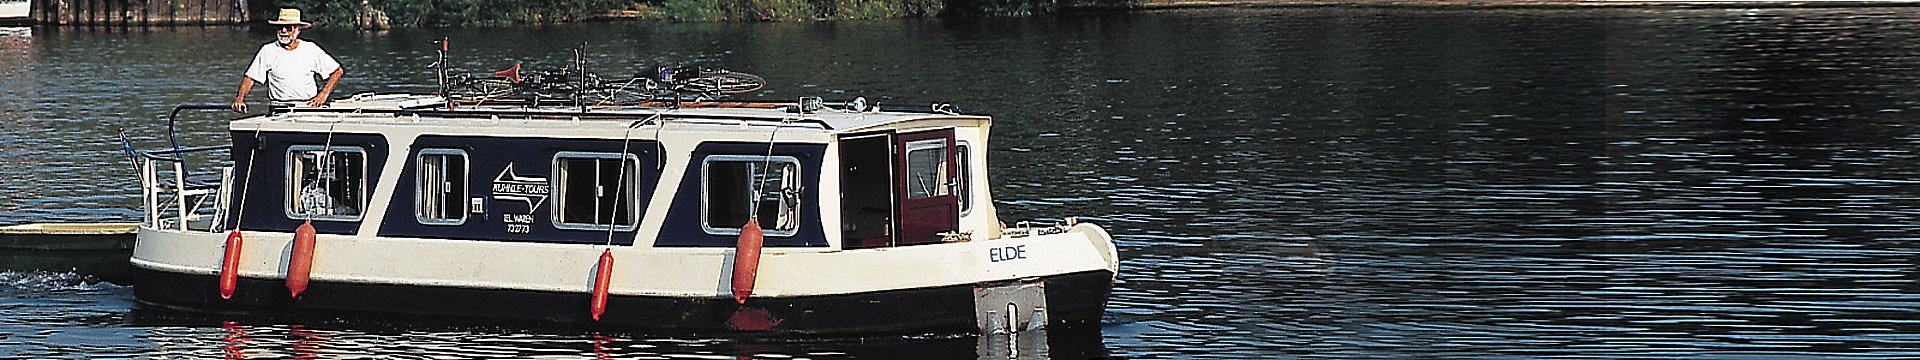 Ein älterer Herr mit Bart, der an einen echten Kapitän erinnert, fährt mit einem Hausboot im Stil eines englischen Narrowbootes über einen See.